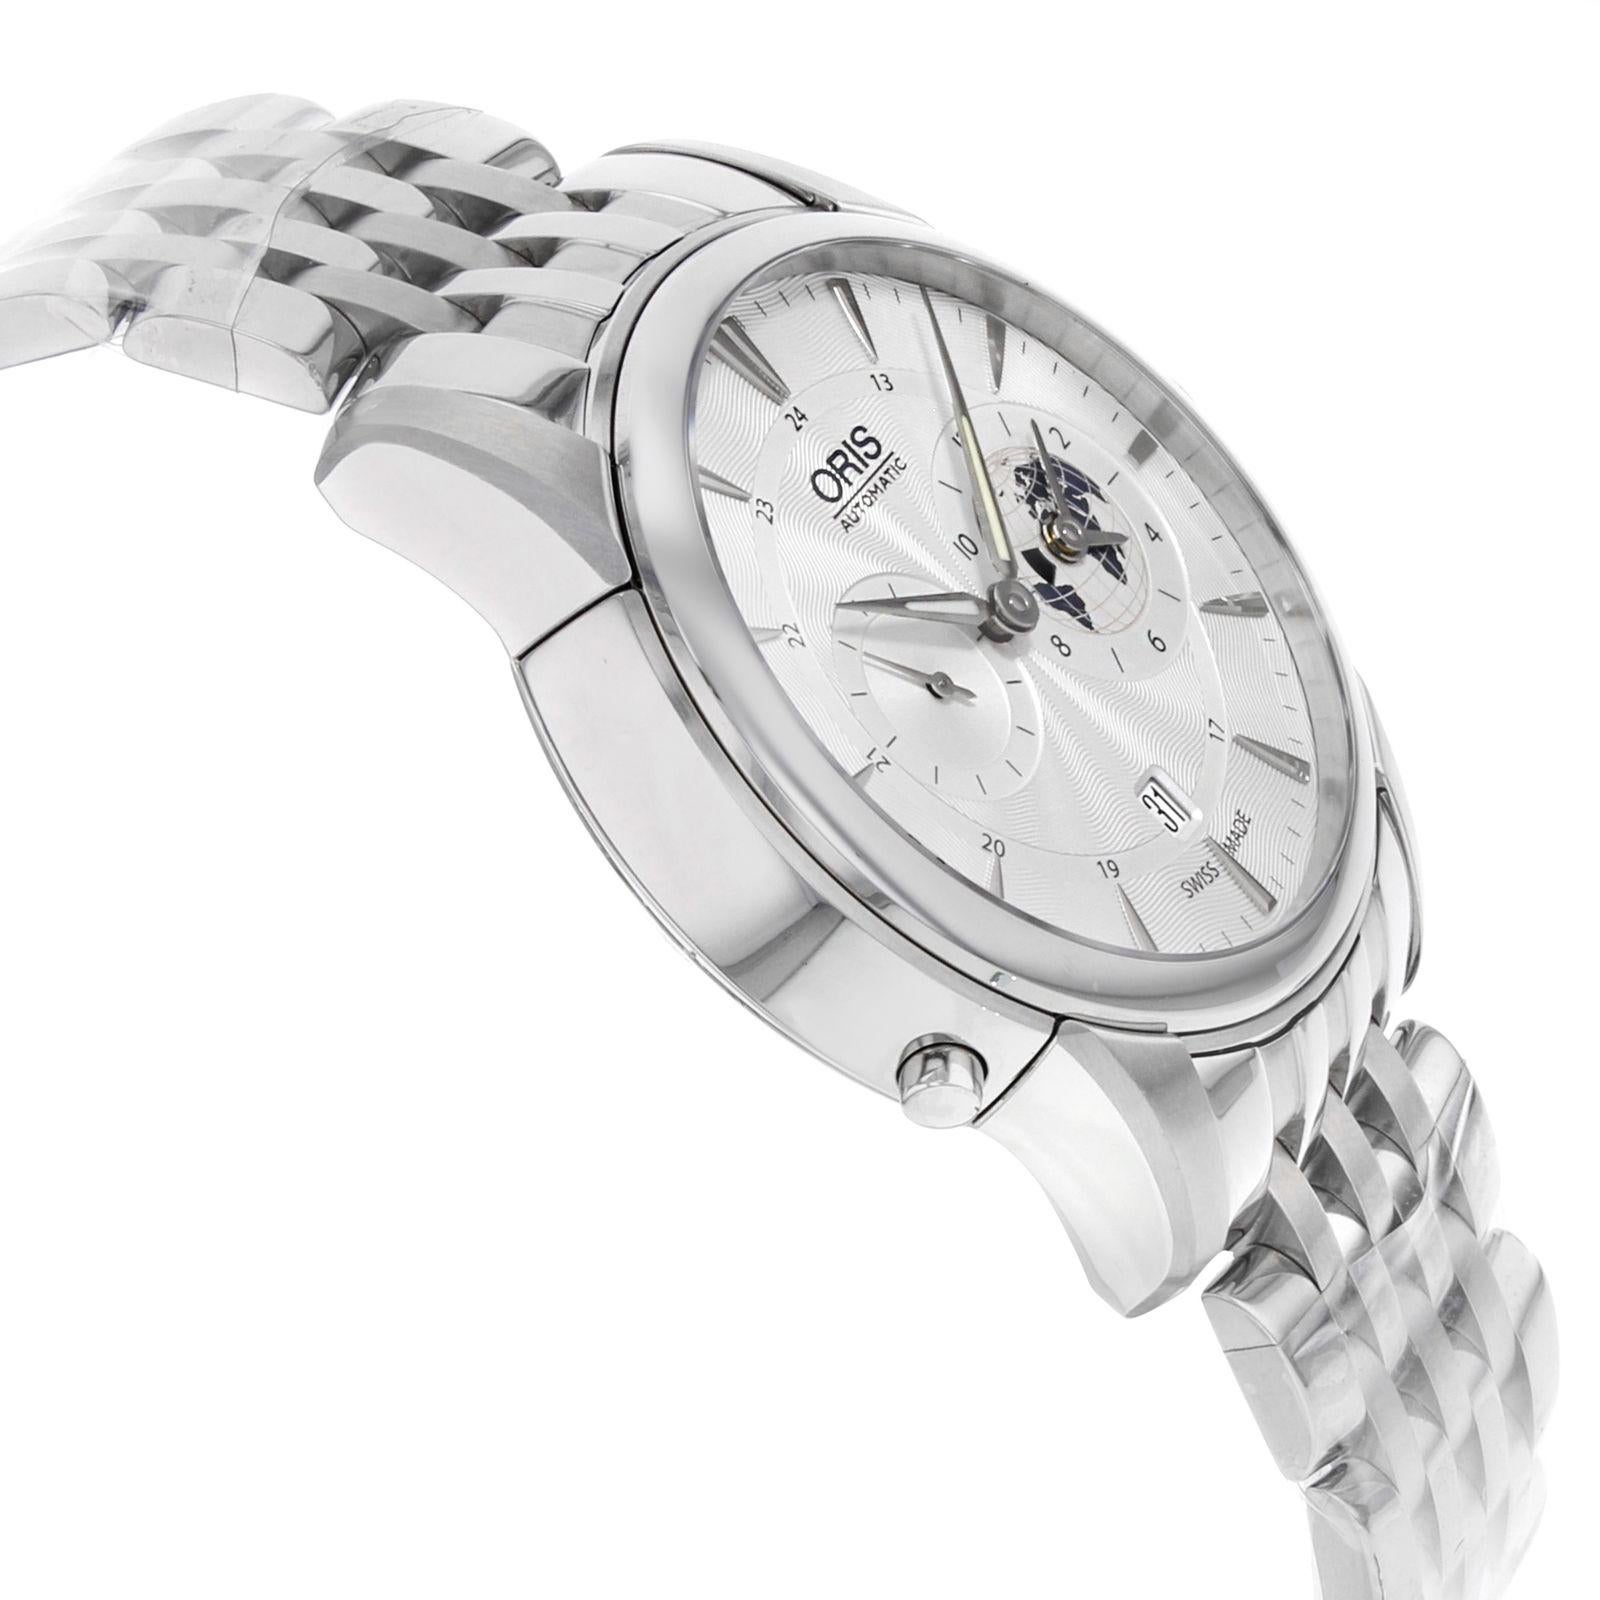 Oris Artelier Steel Silver Limited Edition Automatic Men's Watch 690 7690 4081 1